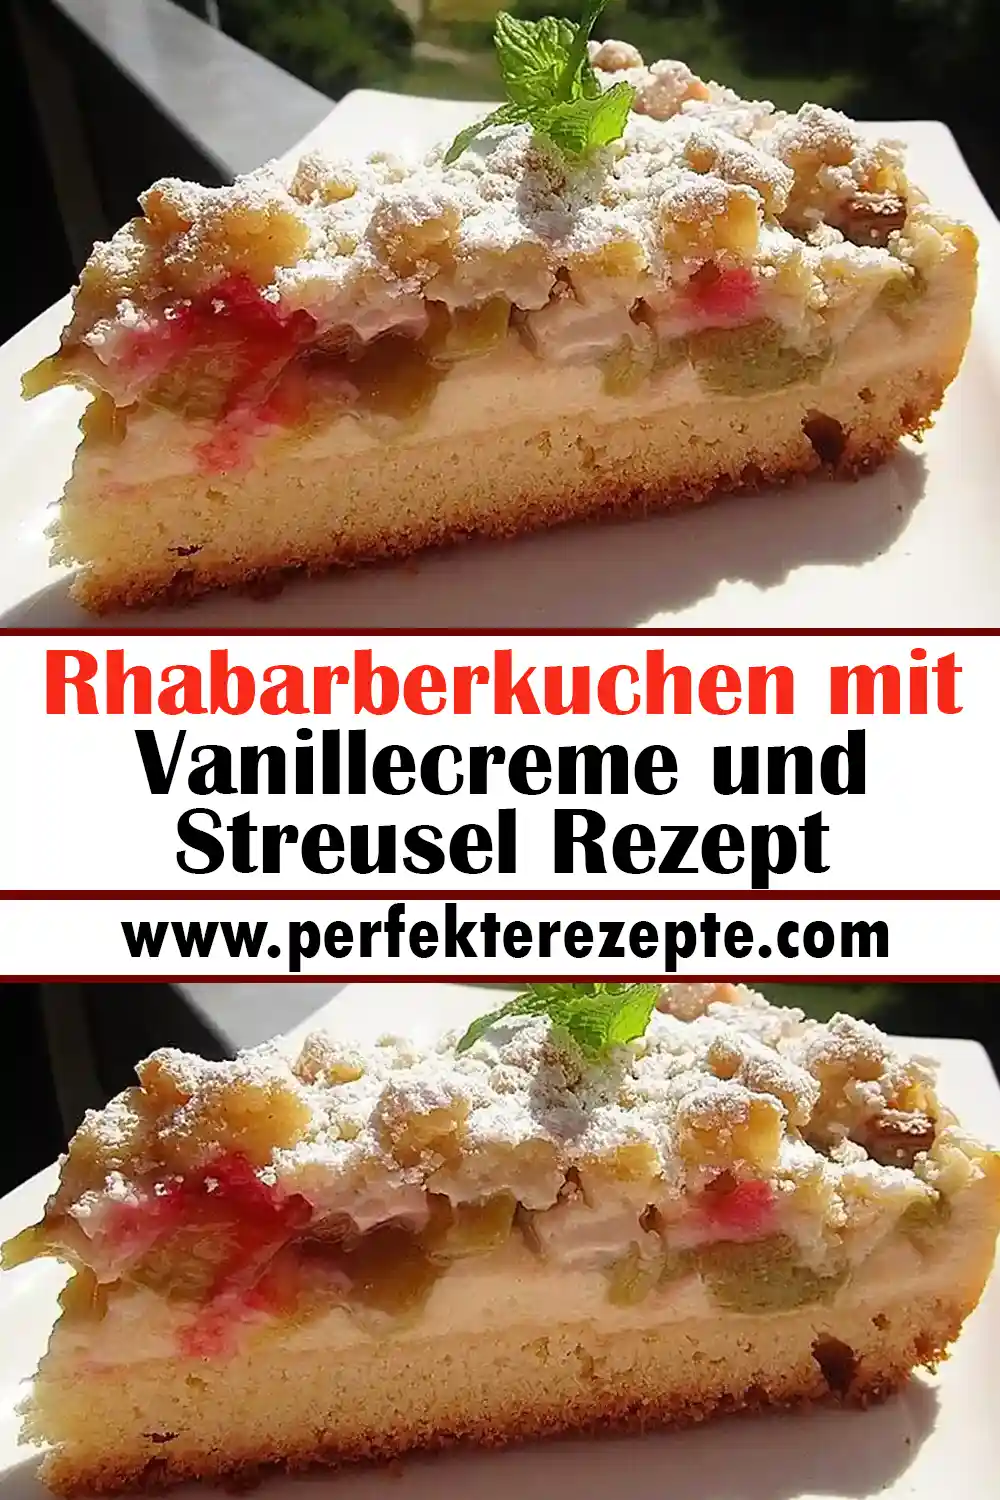 Rhabarberkuchen mit Vanillecreme und Streusel Rezept